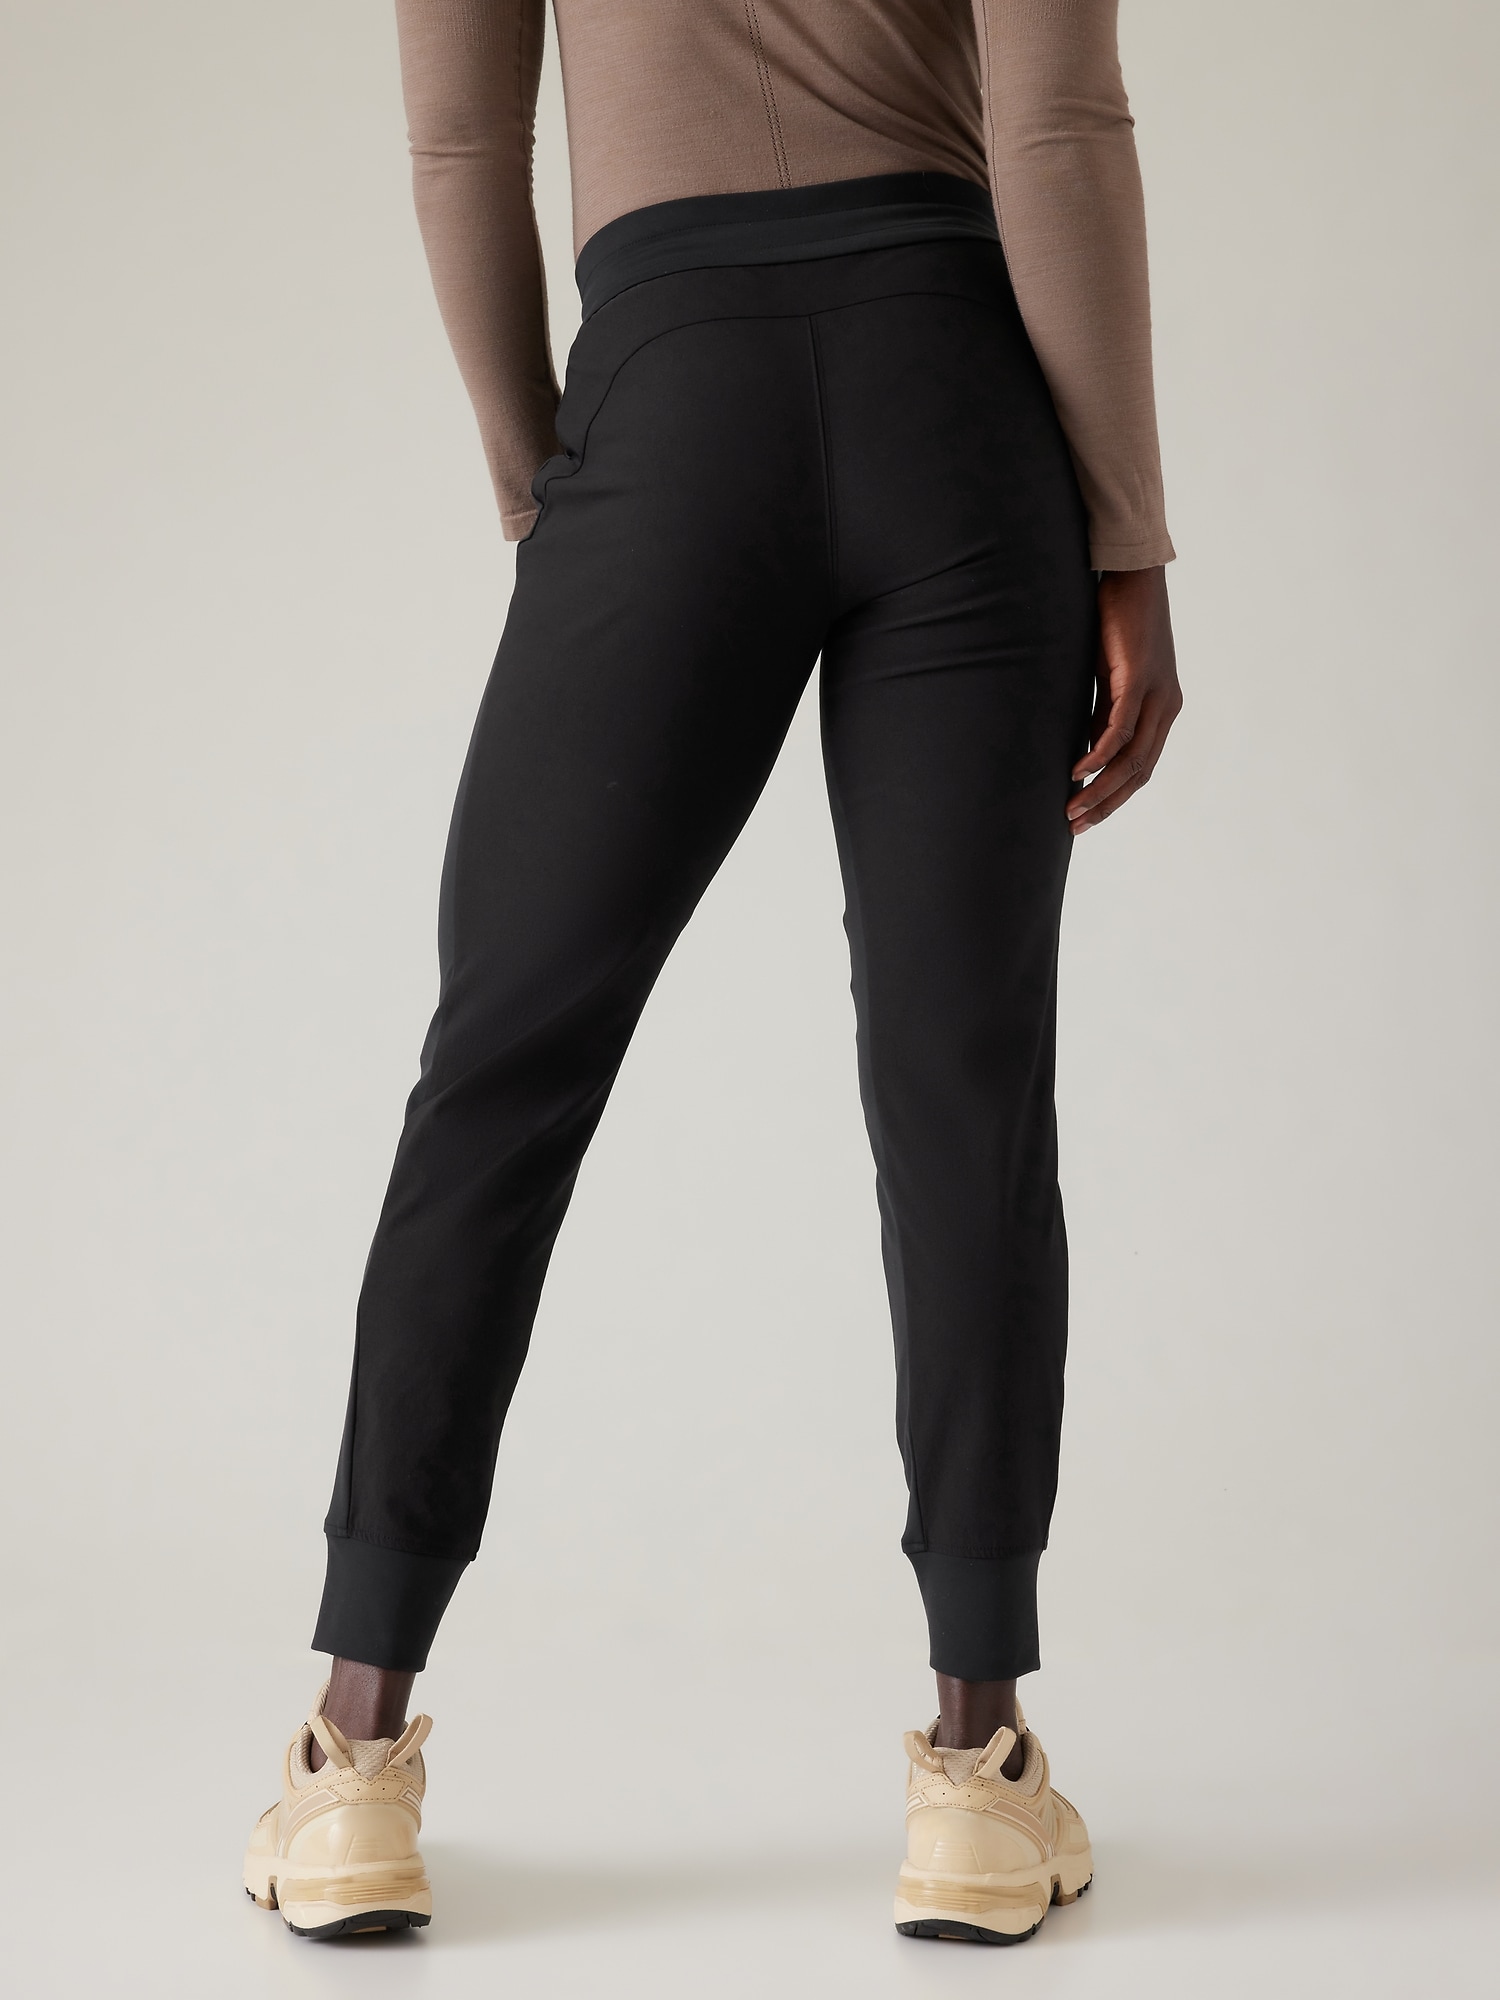 LULULEMON Women's 6 Black and Gray Low Rise Crop Capri Leggings